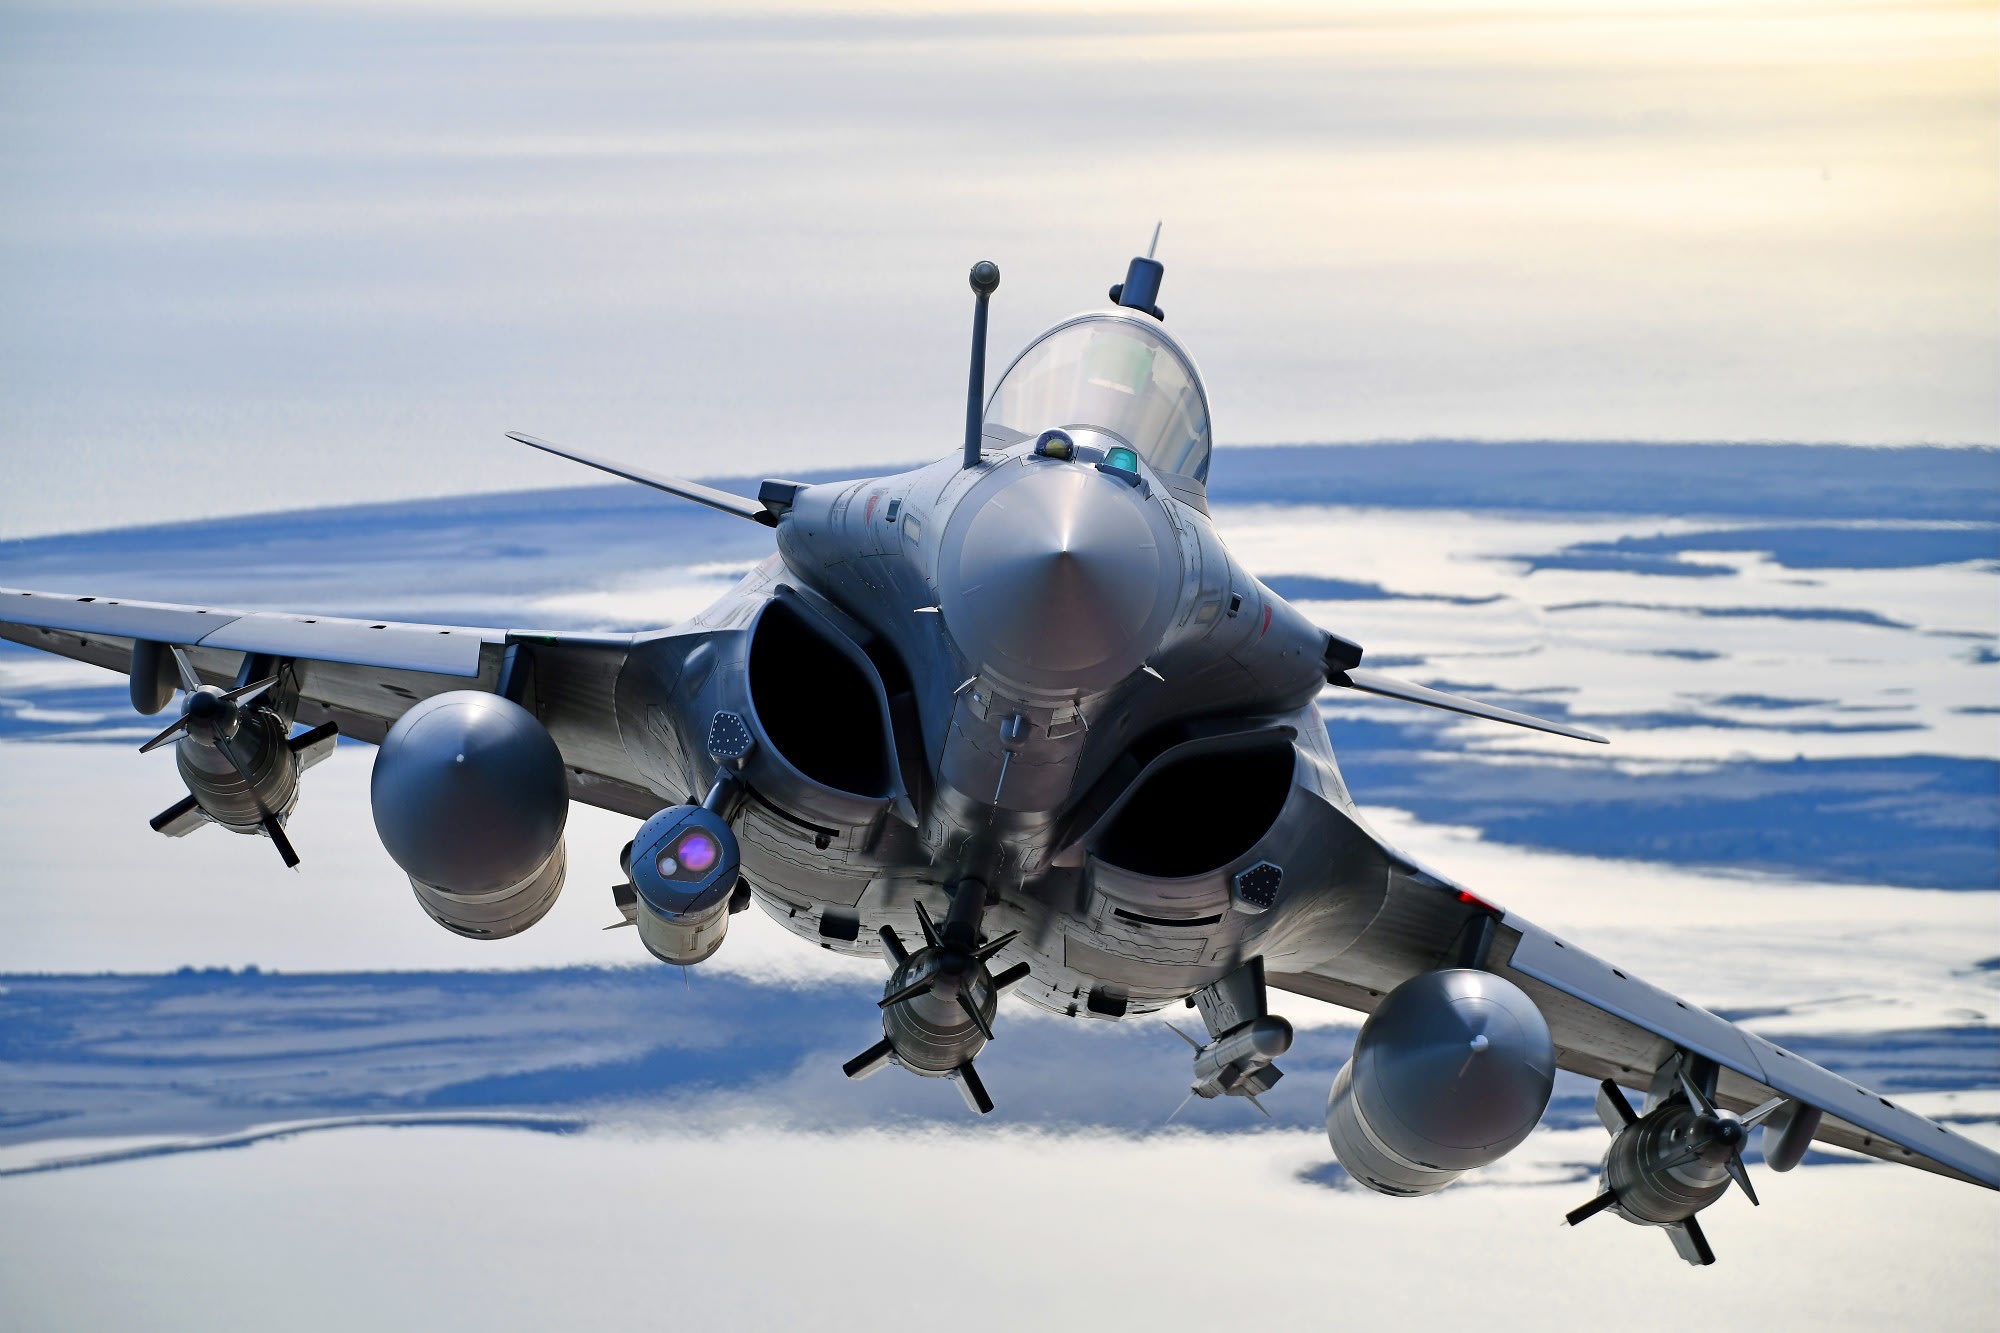 Frankrijk koopt 42 Dassault Rafale gevechtsvliegtuigen